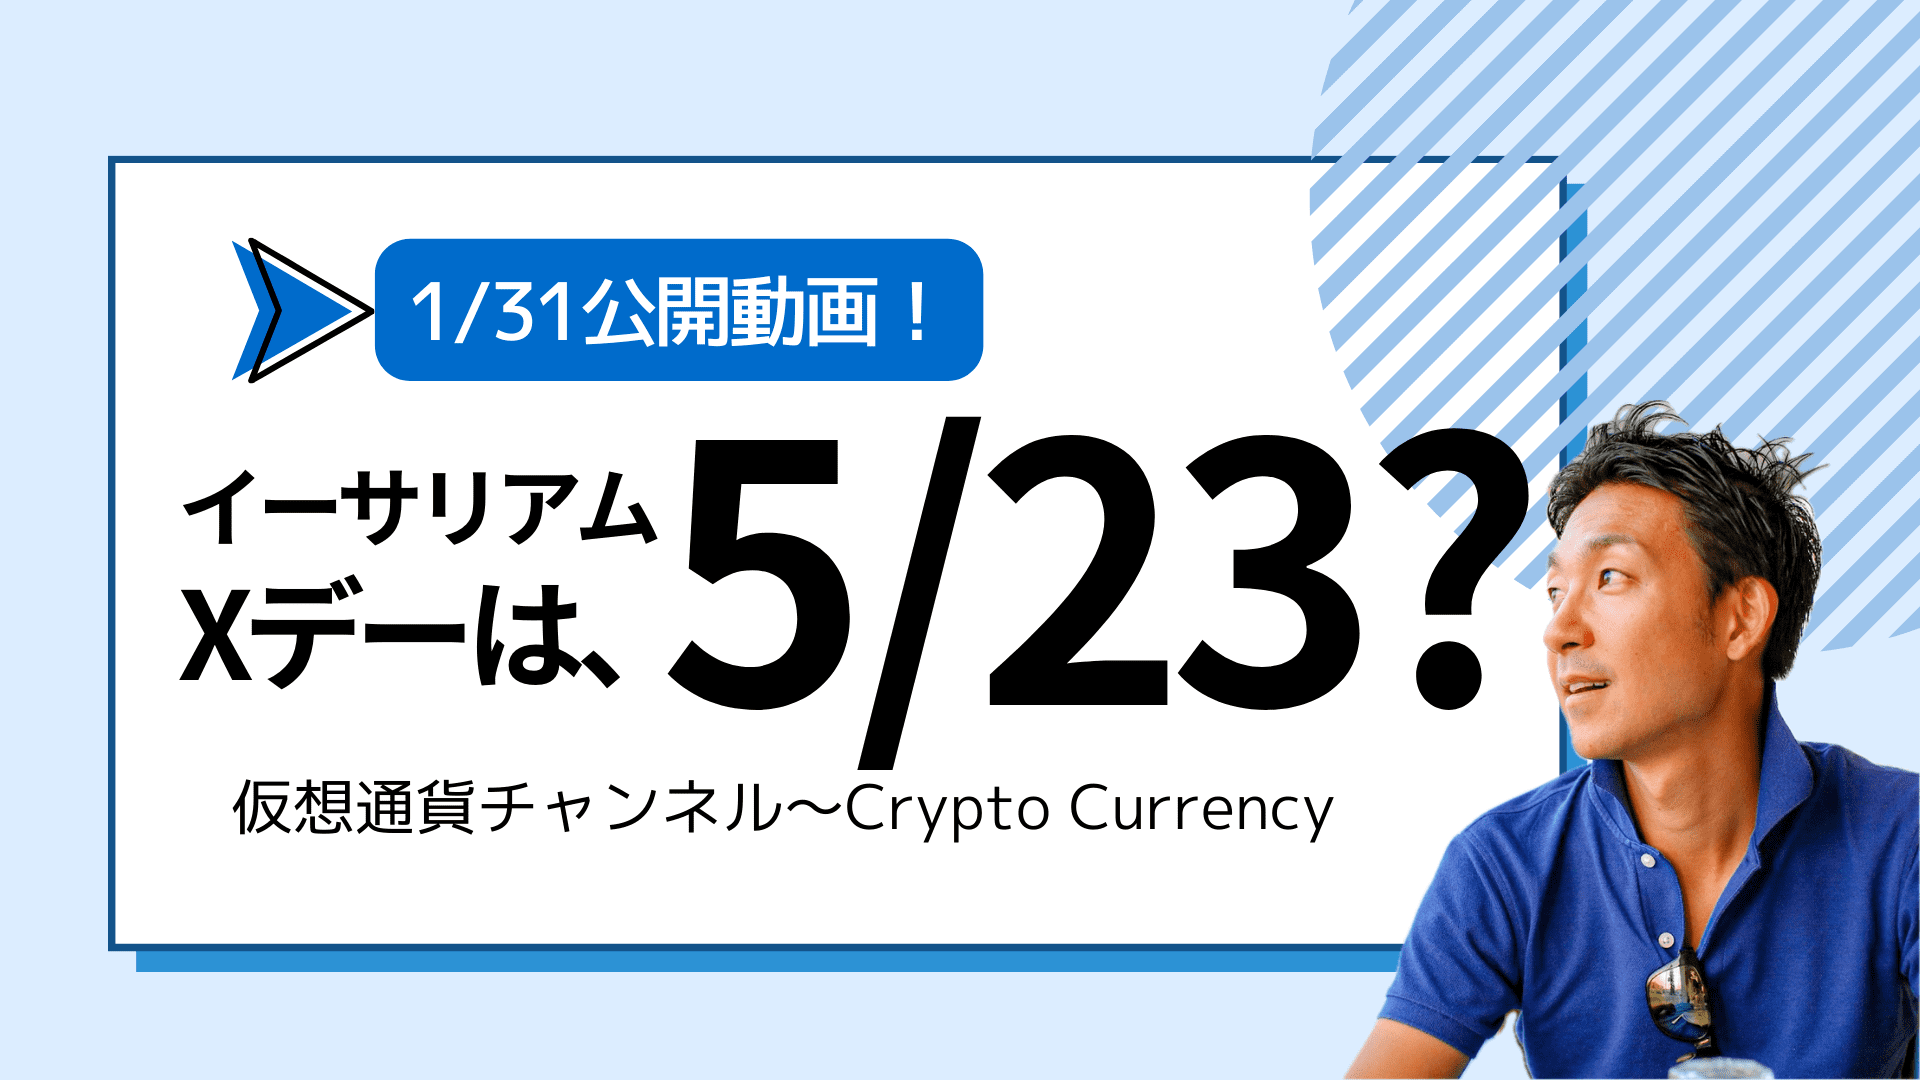 【仮想通貨チャンネル】Joe Takayamaさんが語る『イーサリアムのXデーは5月23日？仮想通貨は更なる上昇期待！』1/31公開